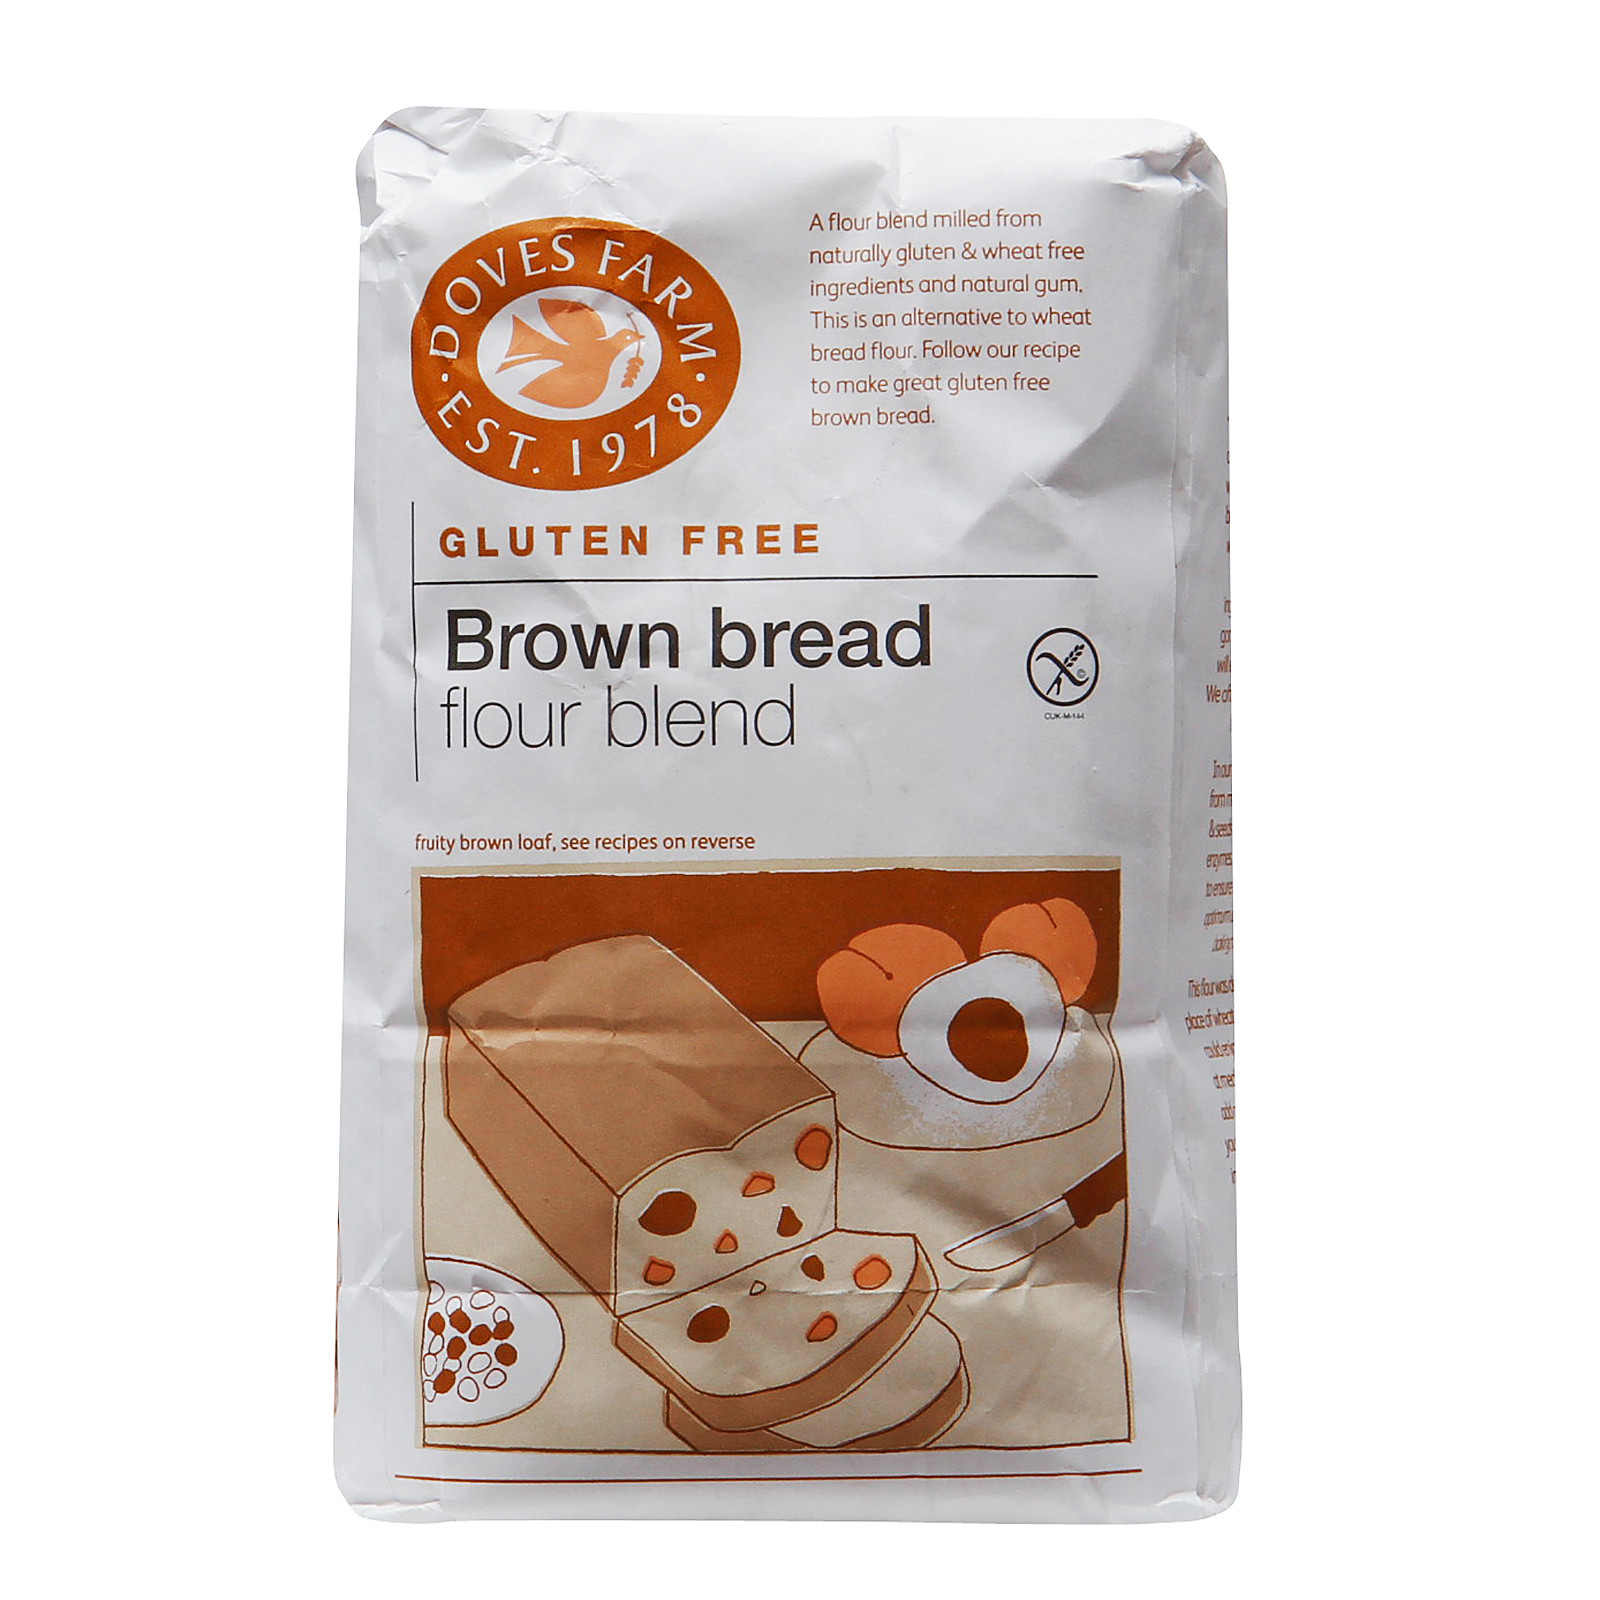 Gluten Free Bread Flour Mix Recipe
 Doves Farm Gluten Free Brown Bread Flour Blend 1kg from